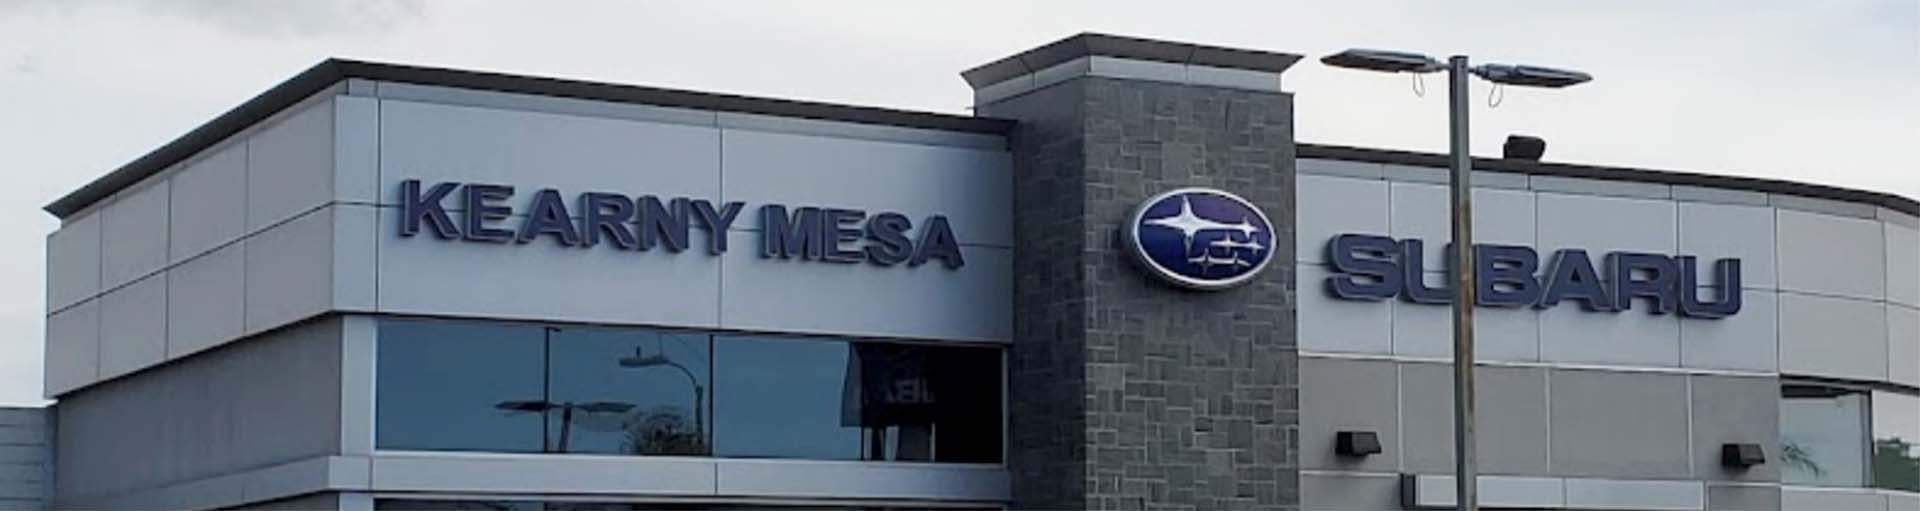  Kearny Mesa Subaru Tire Rotation Service